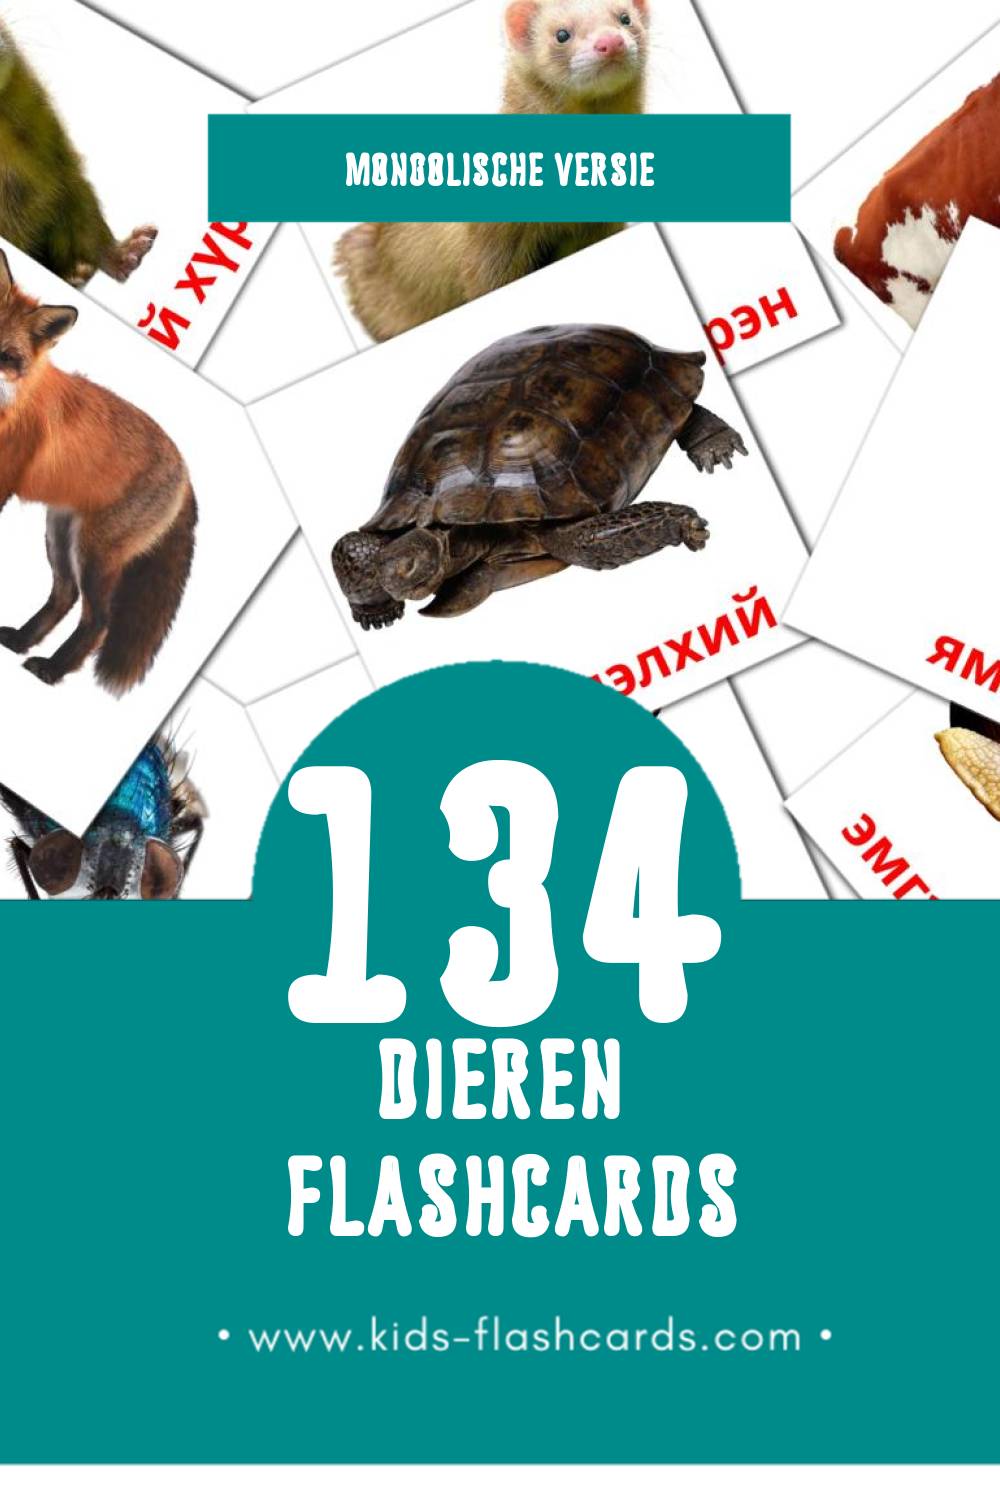 Visuele Амьтад Flashcards voor Kleuters (134 kaarten in het Mongolisch)